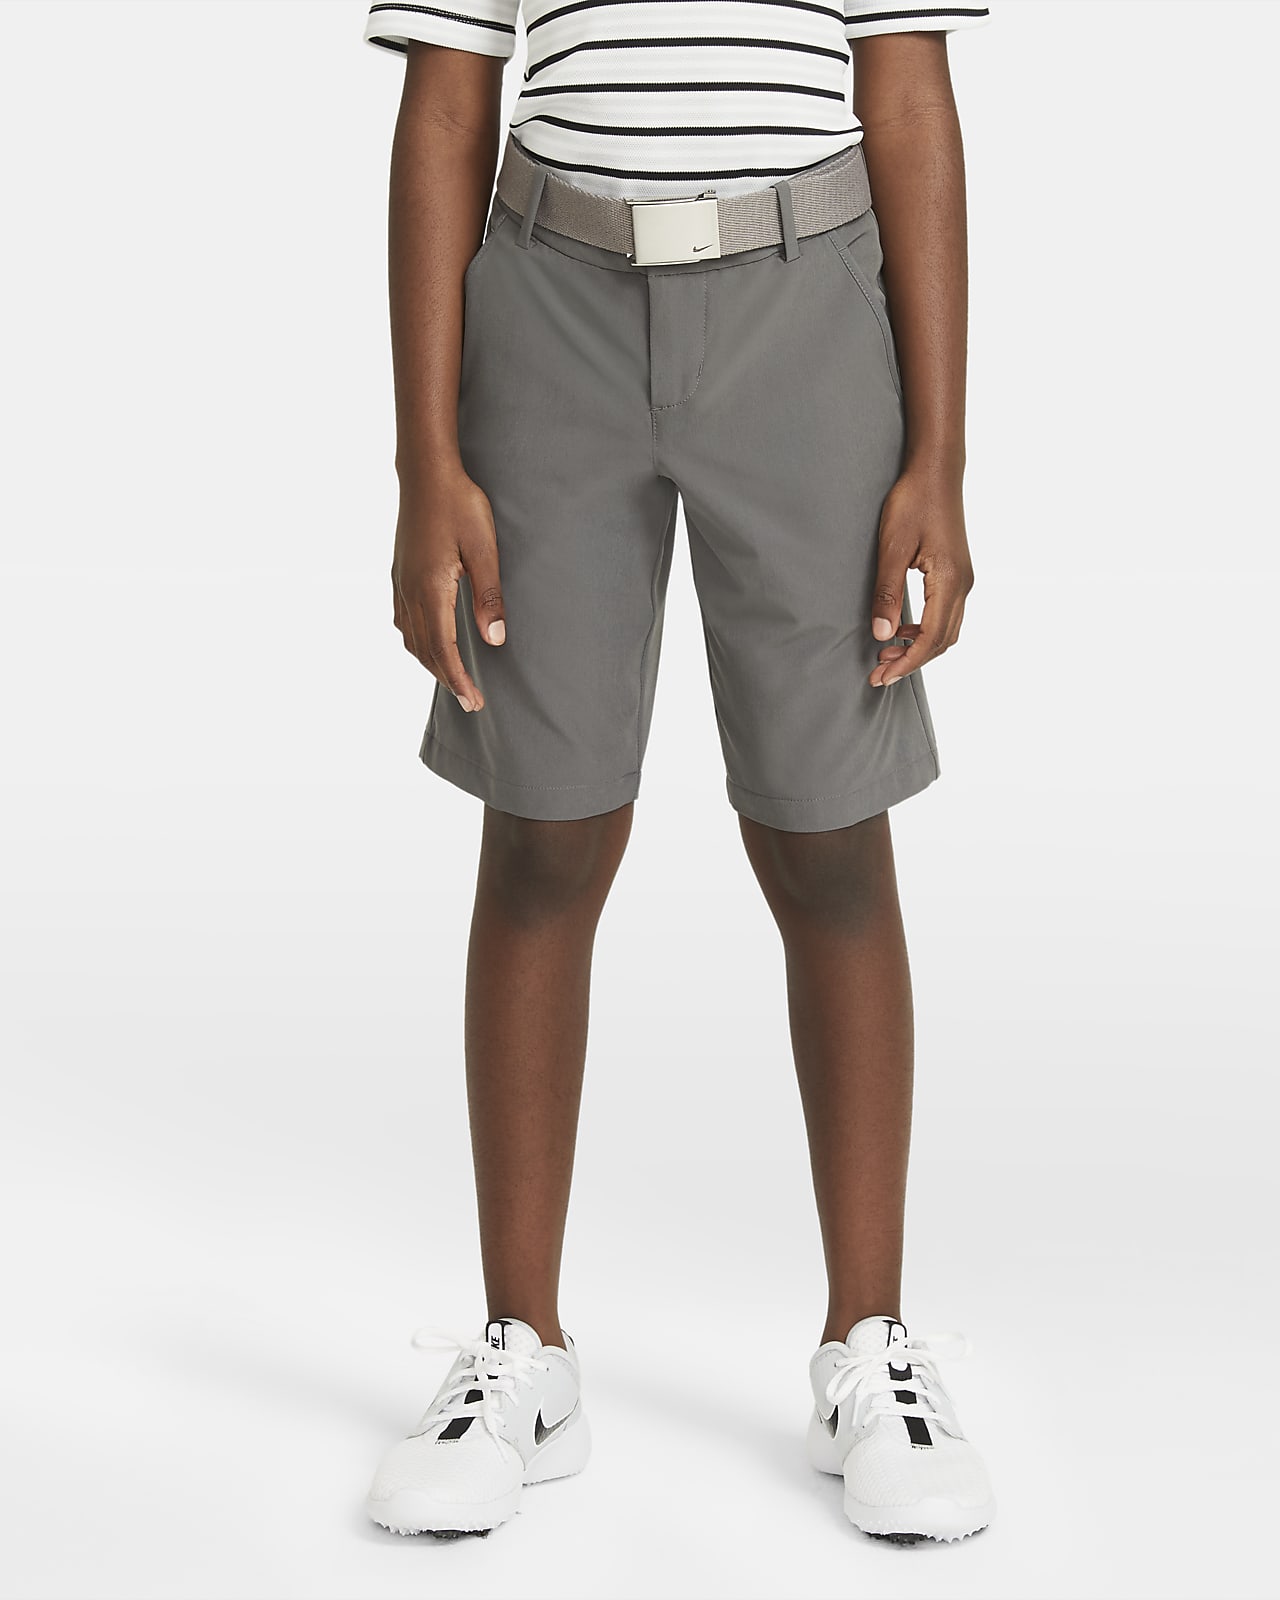 nike youth golf shorts